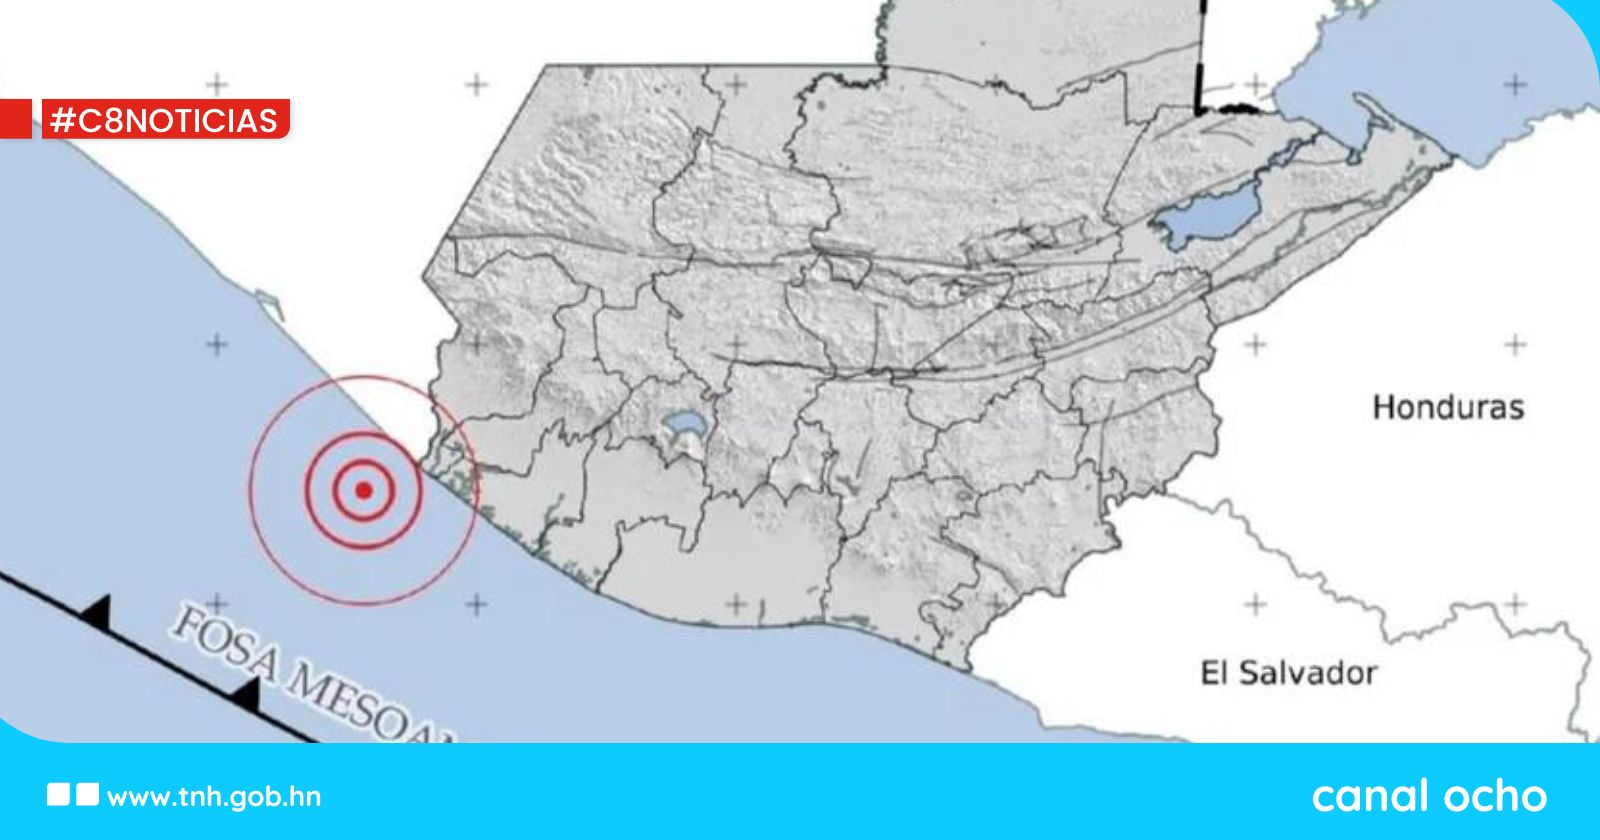 Guatemala despierta con fuerte sismo que deja algunos daños leves